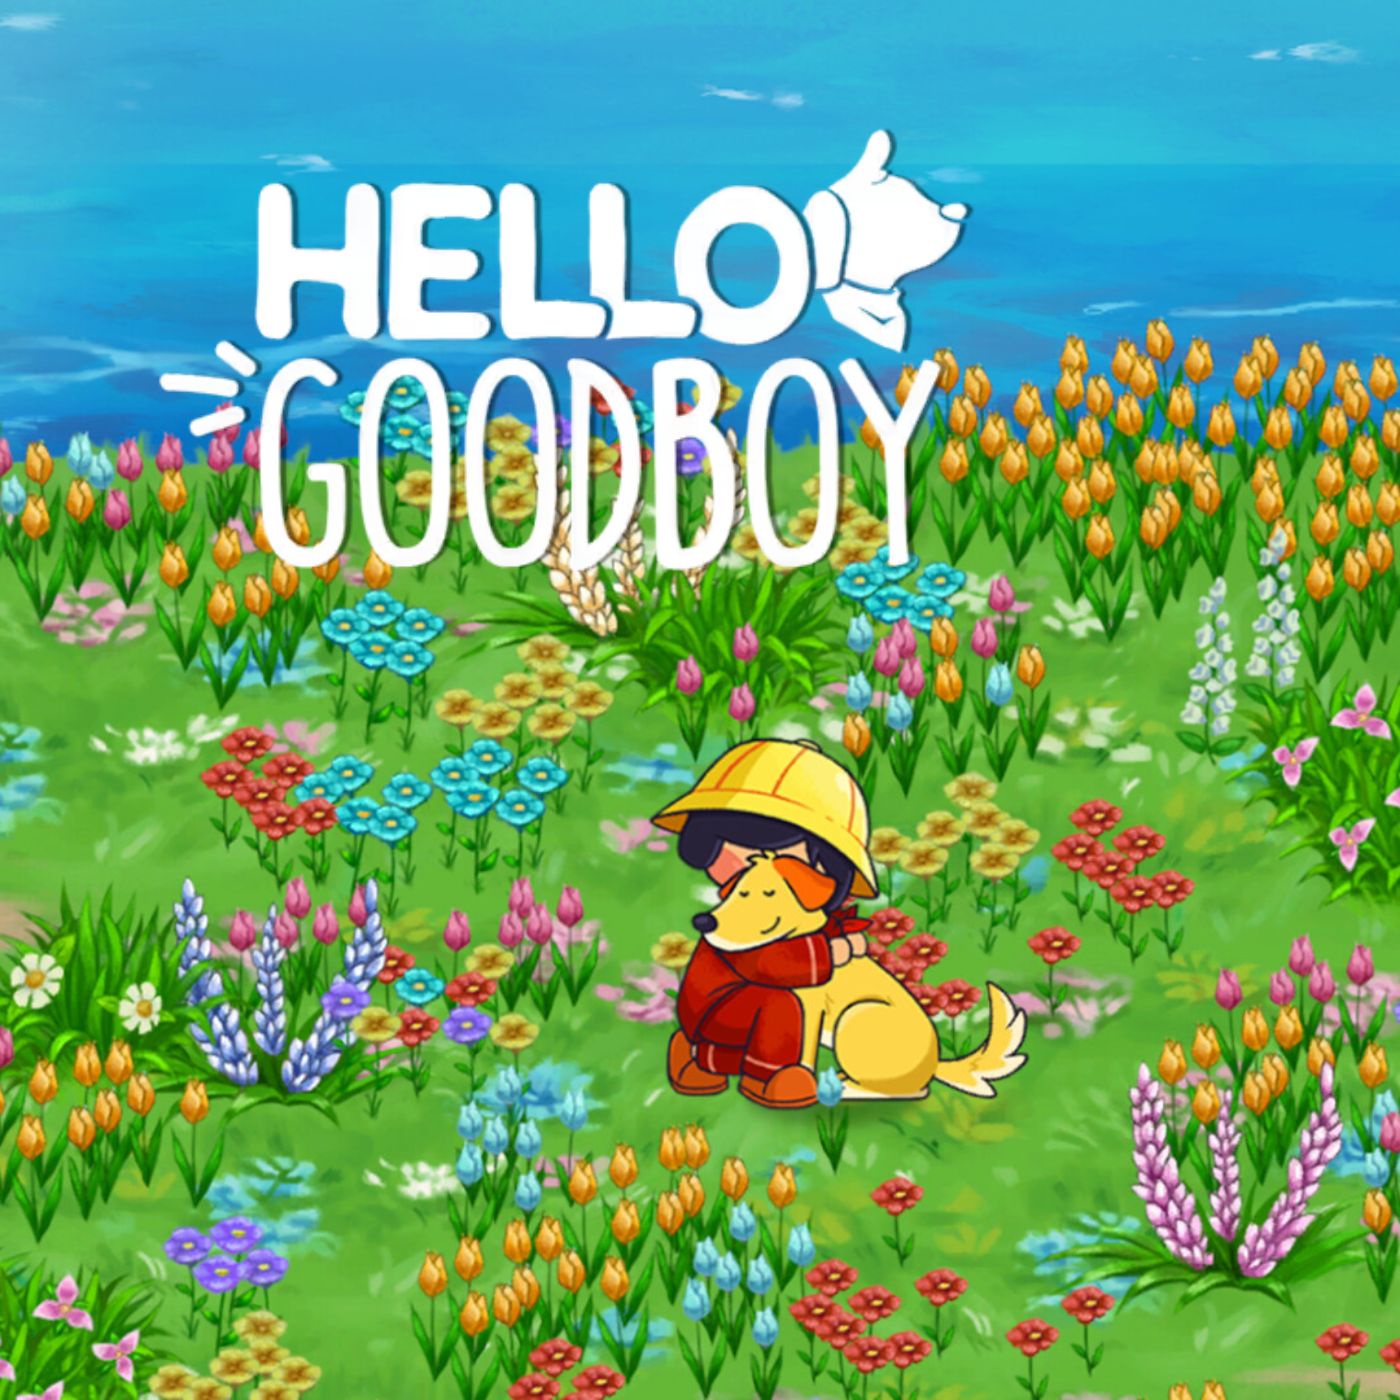 Hello Goodboy (Abenteuerspiel)